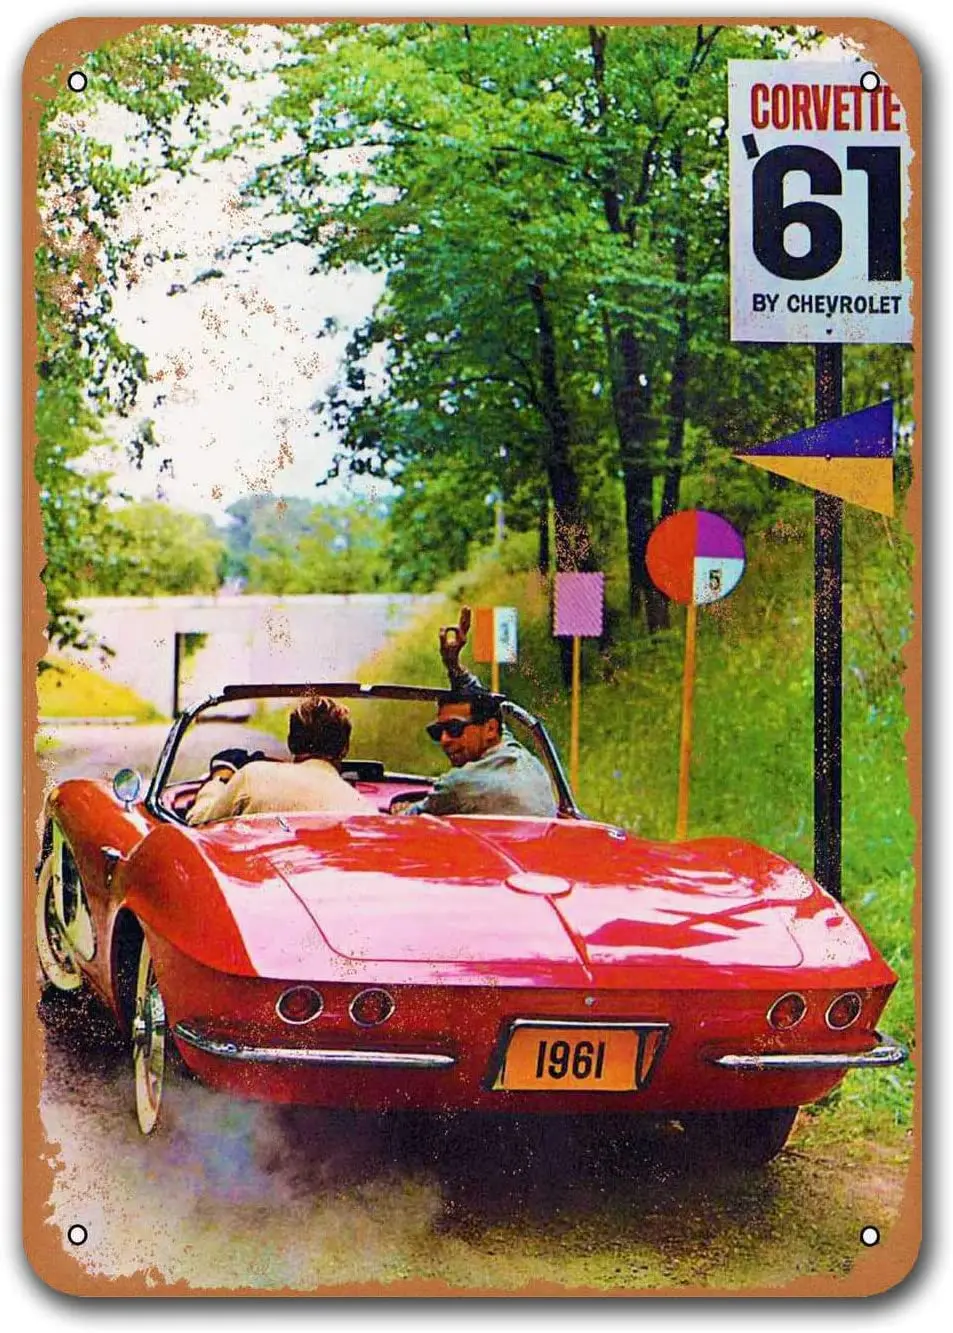 

1961 Corvette автомобильные жестяные знаки винтажные, Sisoso металлические таблички постер для паба гаража Ретро Декор стен 8x12 дюймов